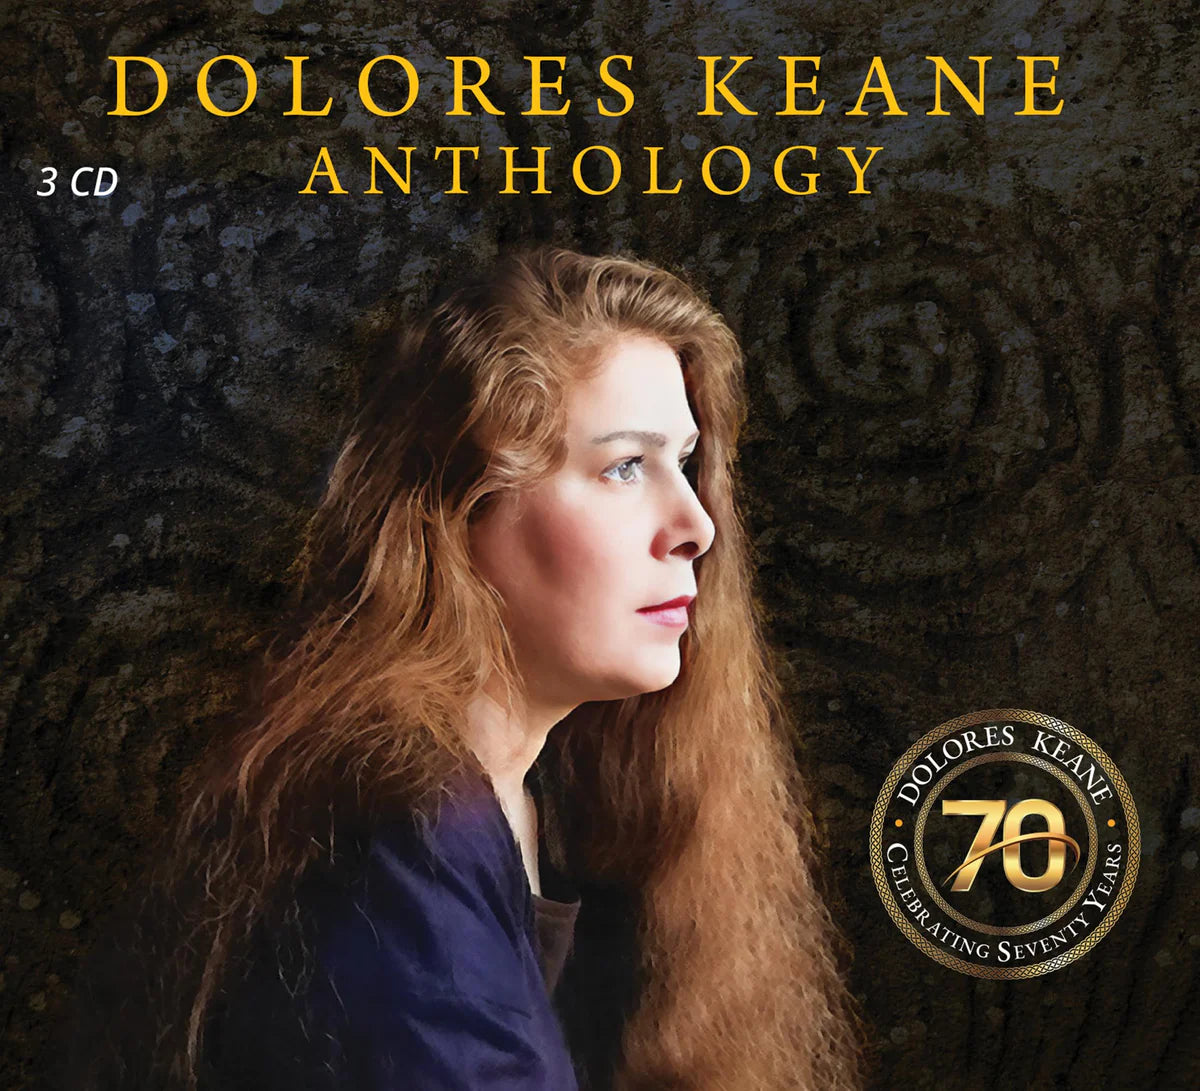 Dolores Keane Anthology 70 Years - Zhivago Gifts